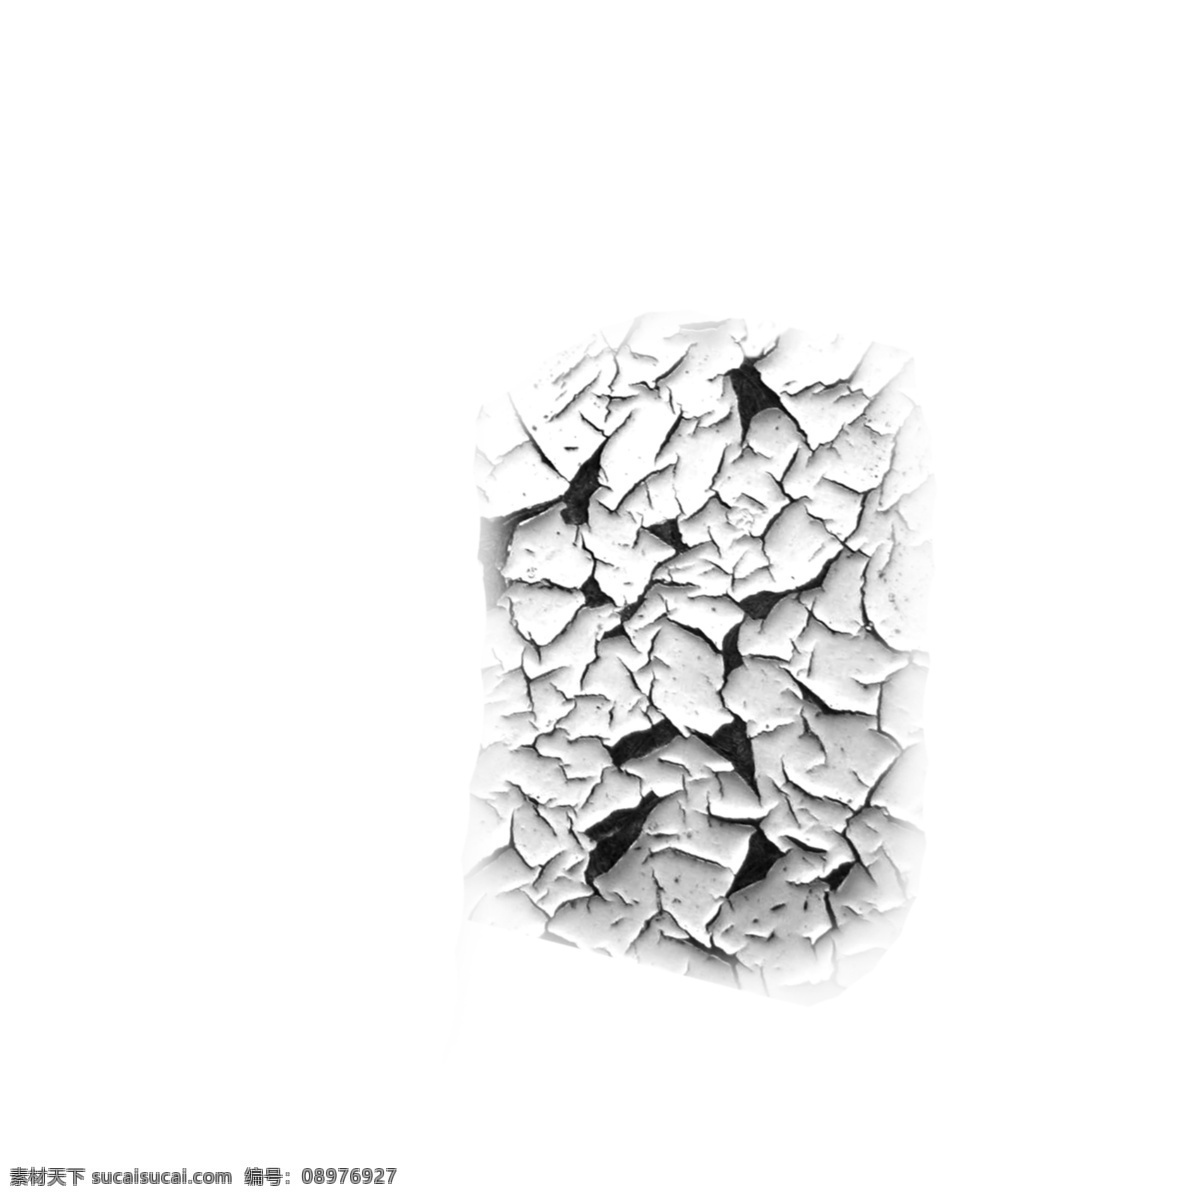 灰色 干旱 裂缝 泼墨 地裂 干裂 地皮 水彩 卡通 手绘 创意 抽象 艺术 新意 水墨画 中国风 个性 画技 画法